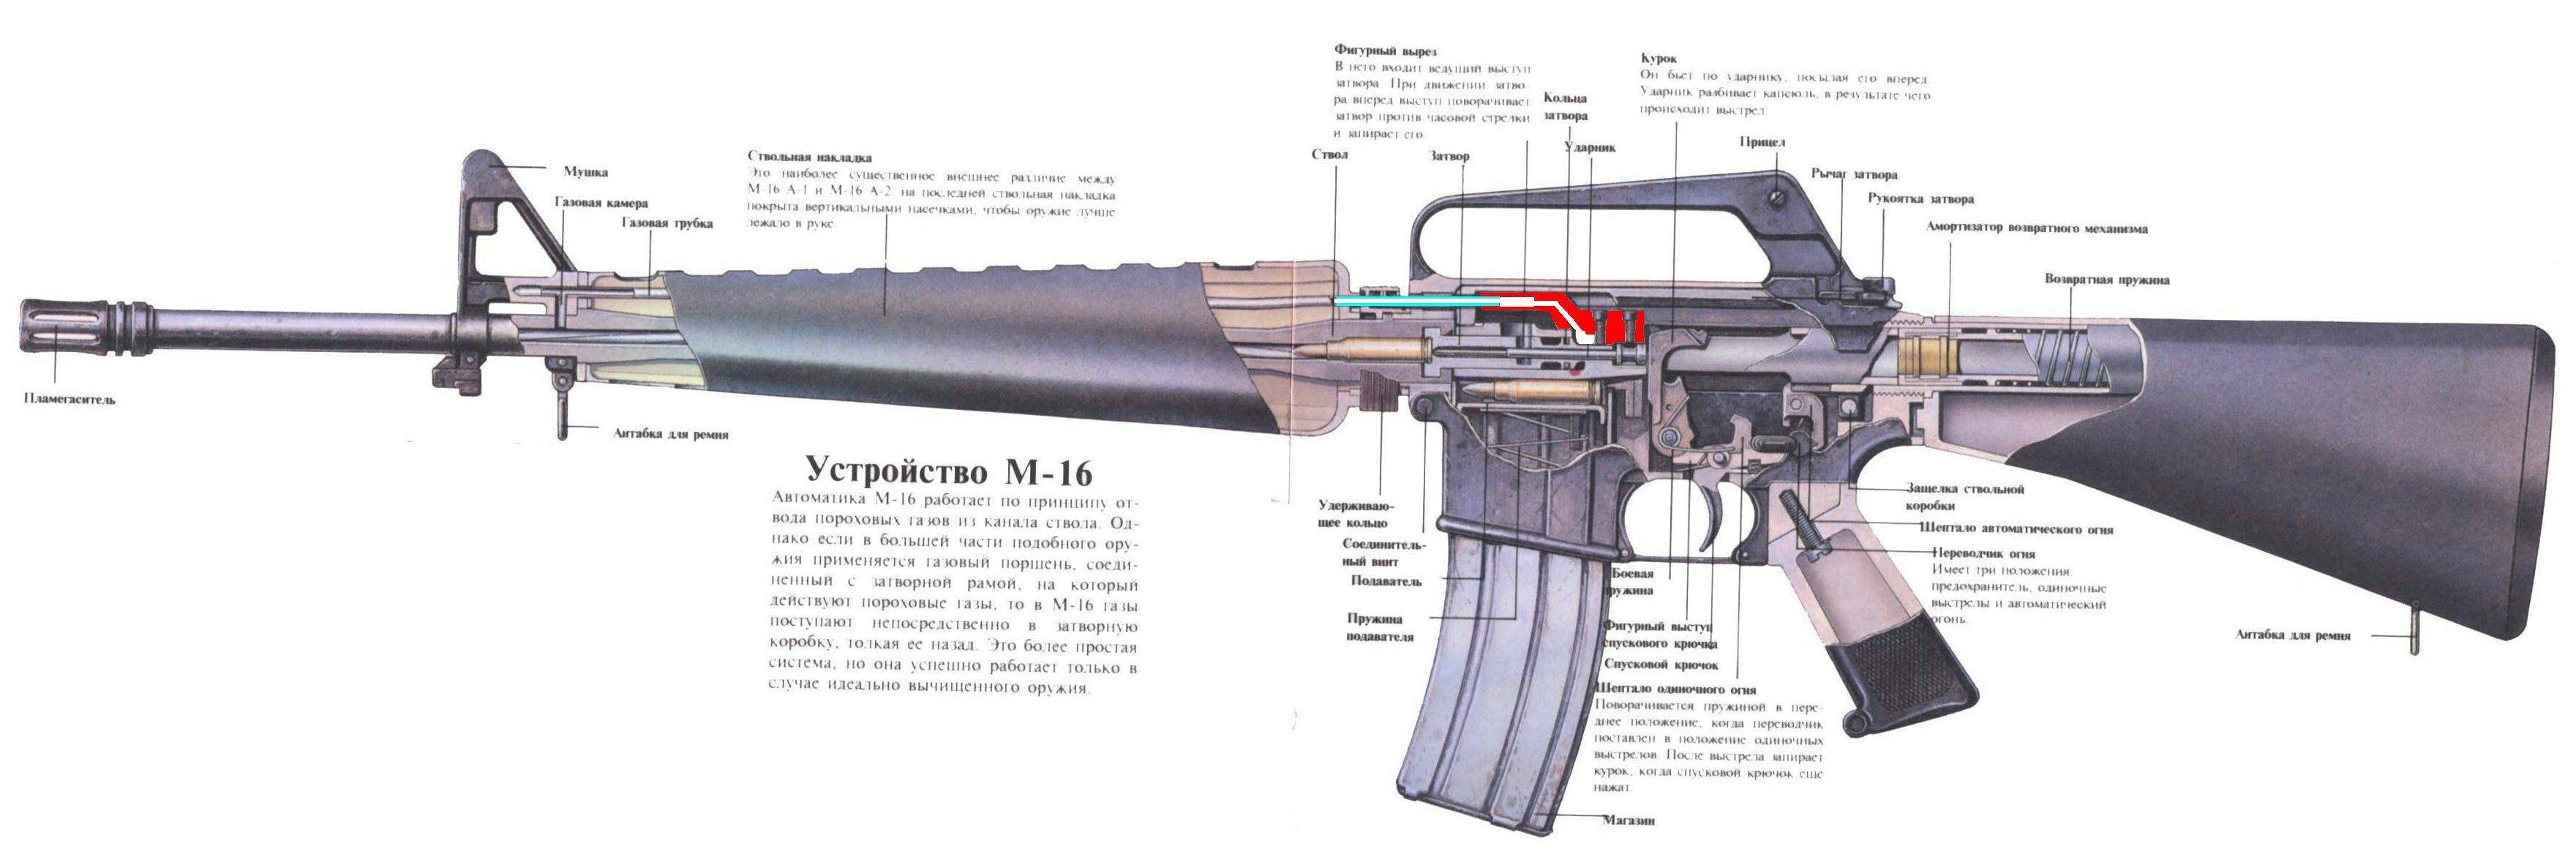 Американская винтовка м16: история, ттх, видео